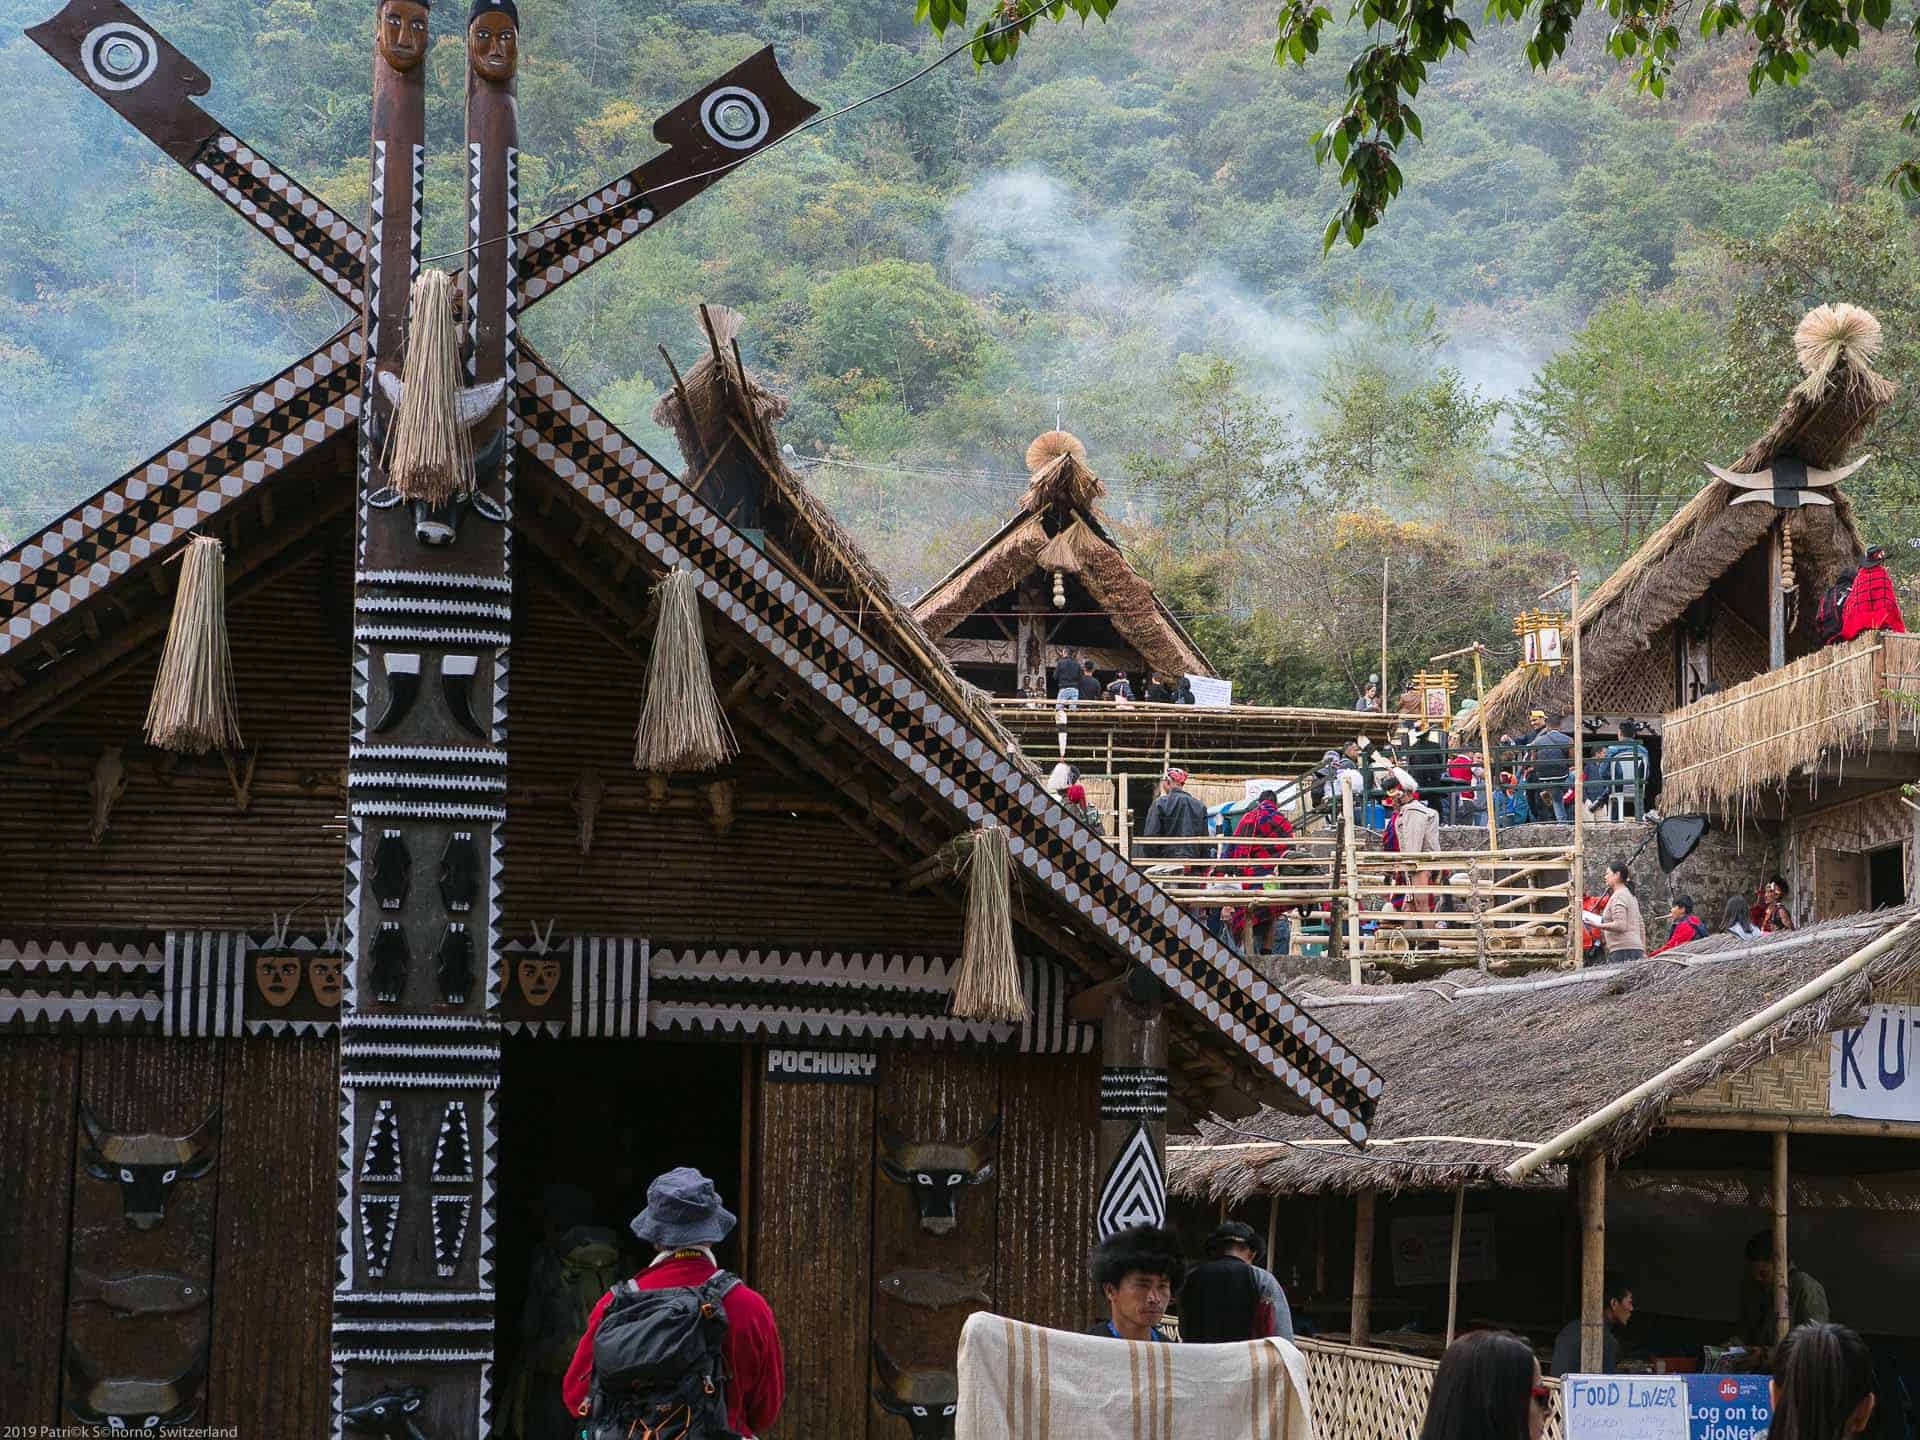 Bamboo Retreat Hotel - image "Nagaland - Reisebericht von Teeplantagen und dem Hornbill Festival - Informationen für die Indien Reise" 323